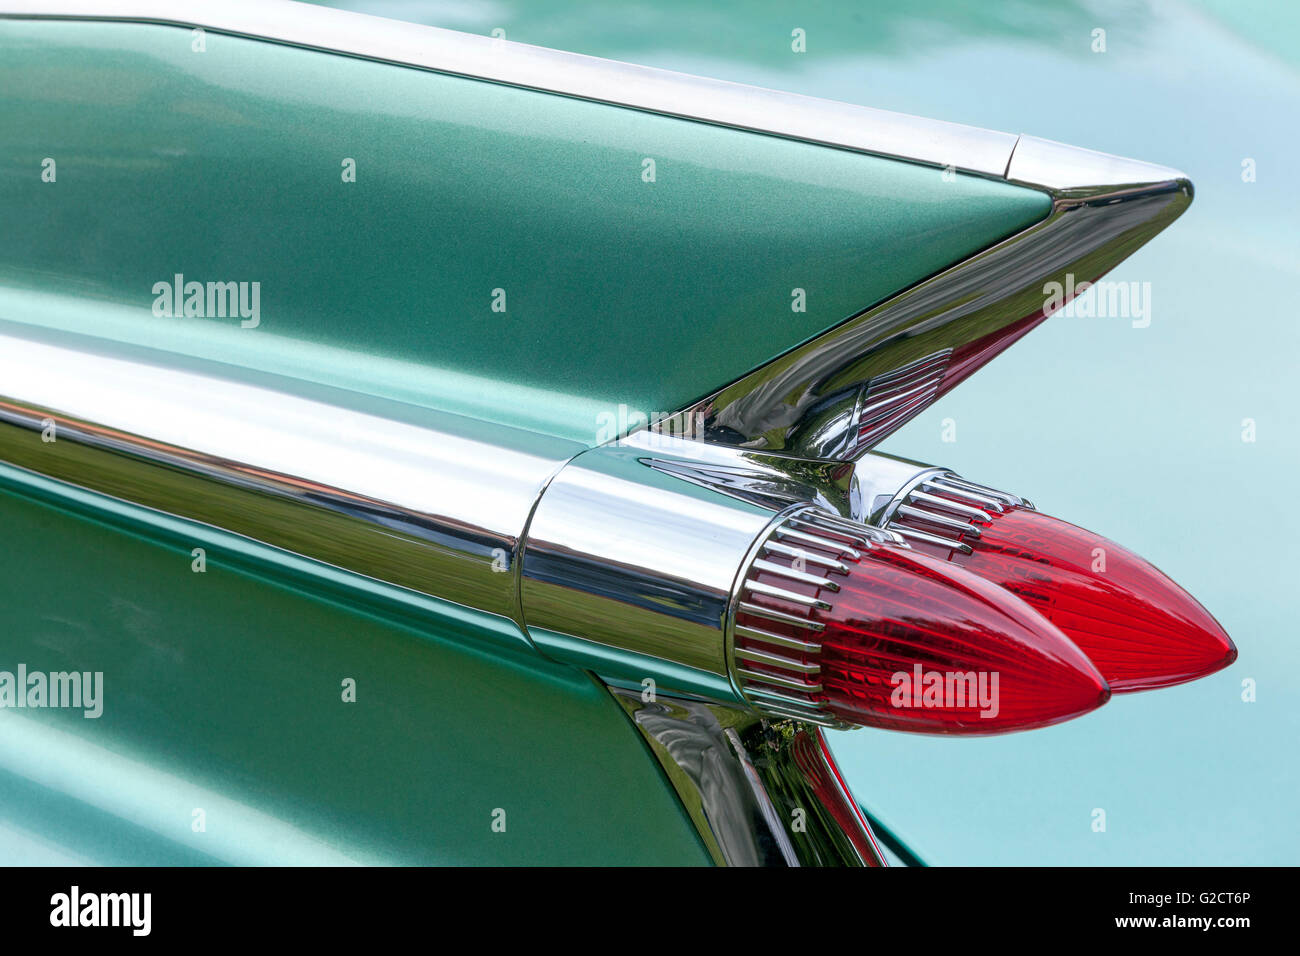 Cadillac Fleetwood 1959, Rücklicht Cadillac im Oldtimer-Stil aus nächster Nähe Stockfoto